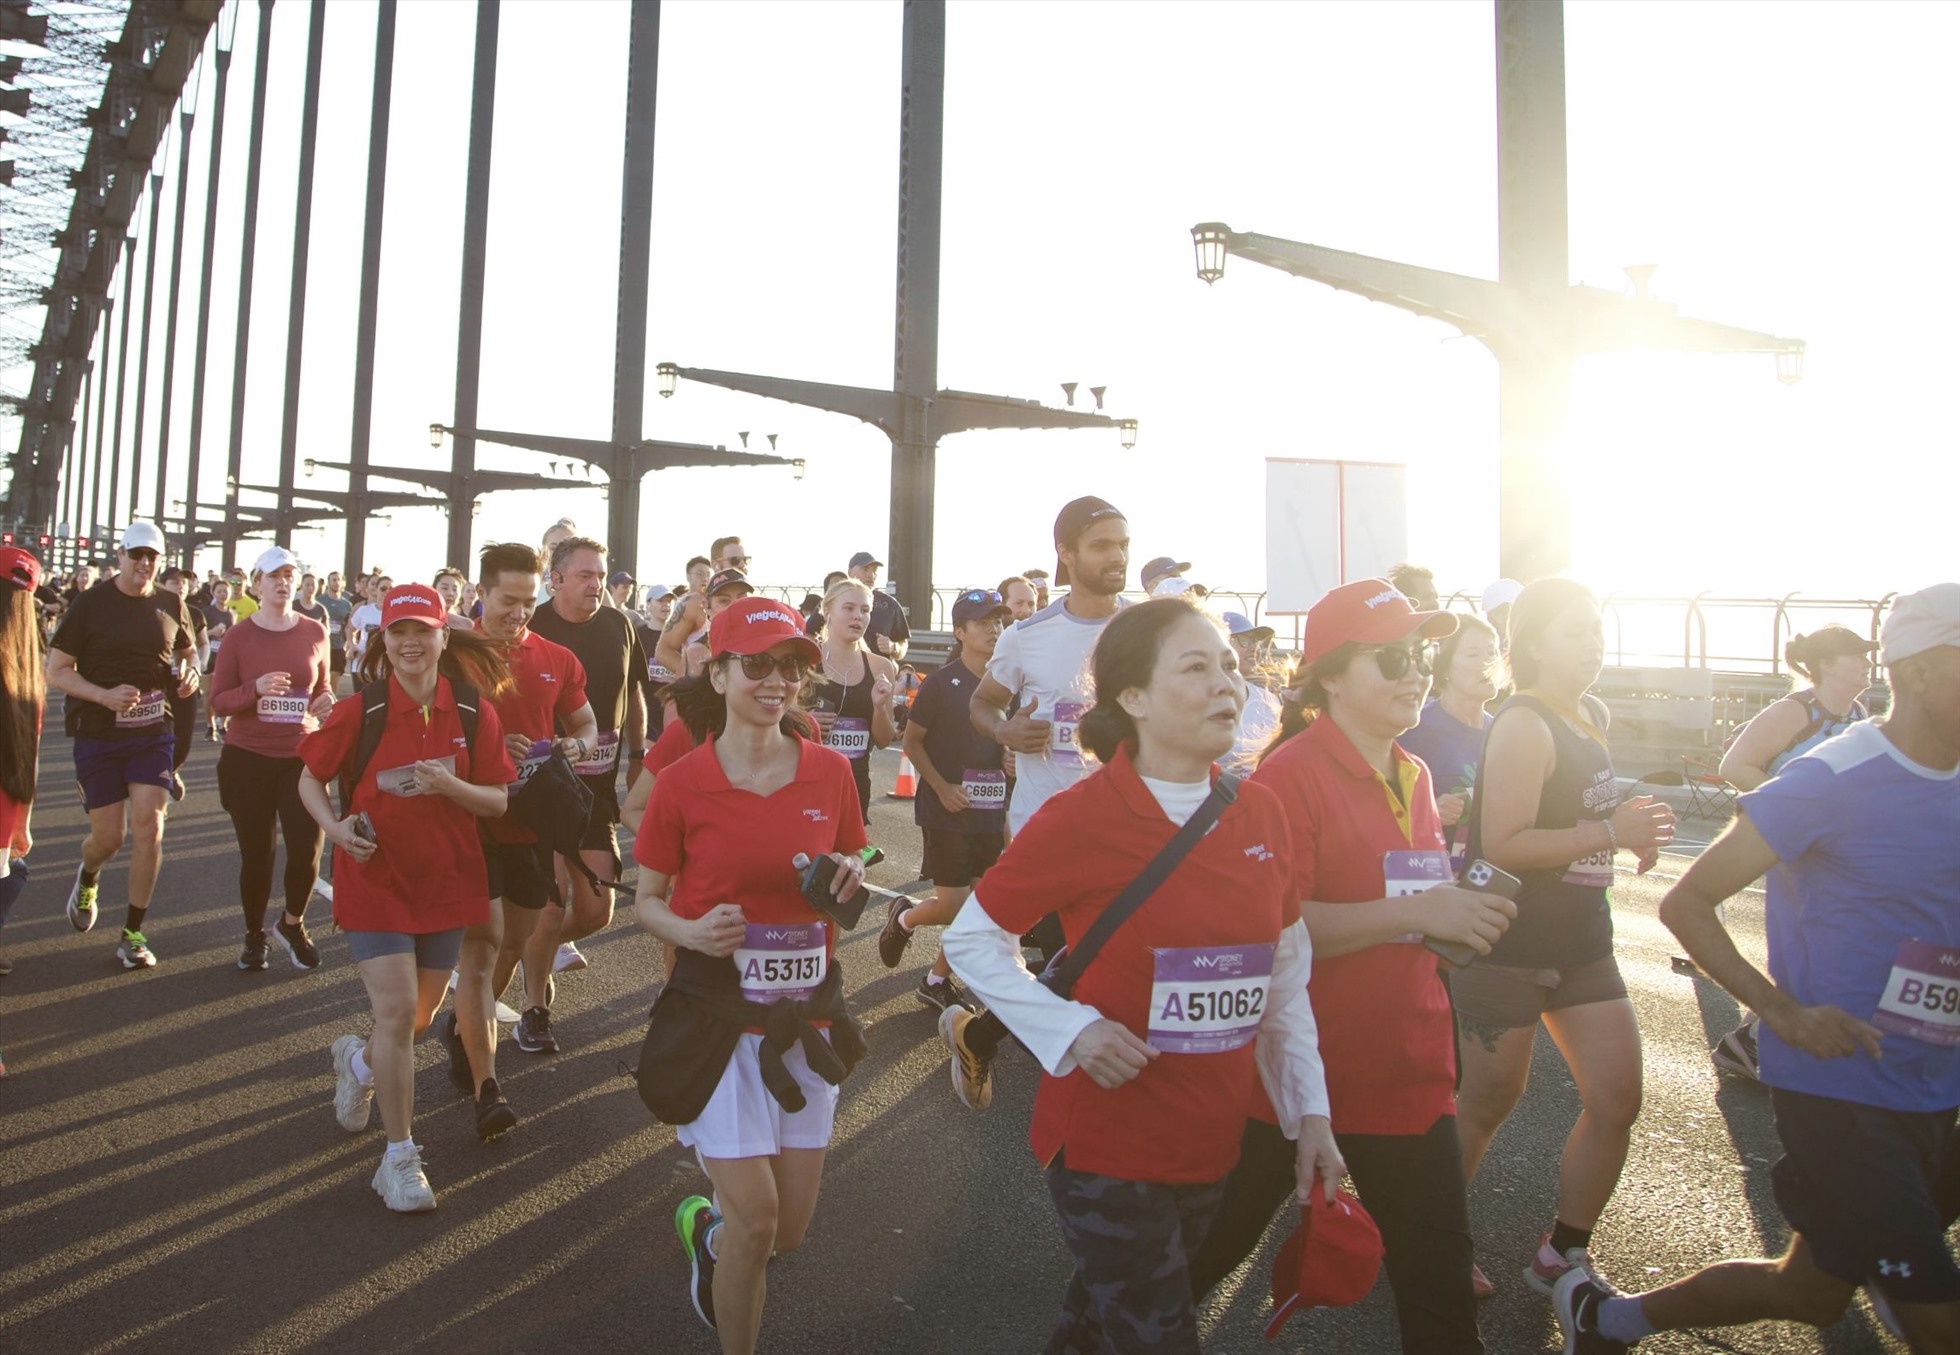 Giải chạy Sydney Marathon 2023 diễn ra với sự tham gia của hơn 40.000 vận động viên, người yêu chạy từ hơn 75 nước, vùng lãnh thổ khắp thế giới.